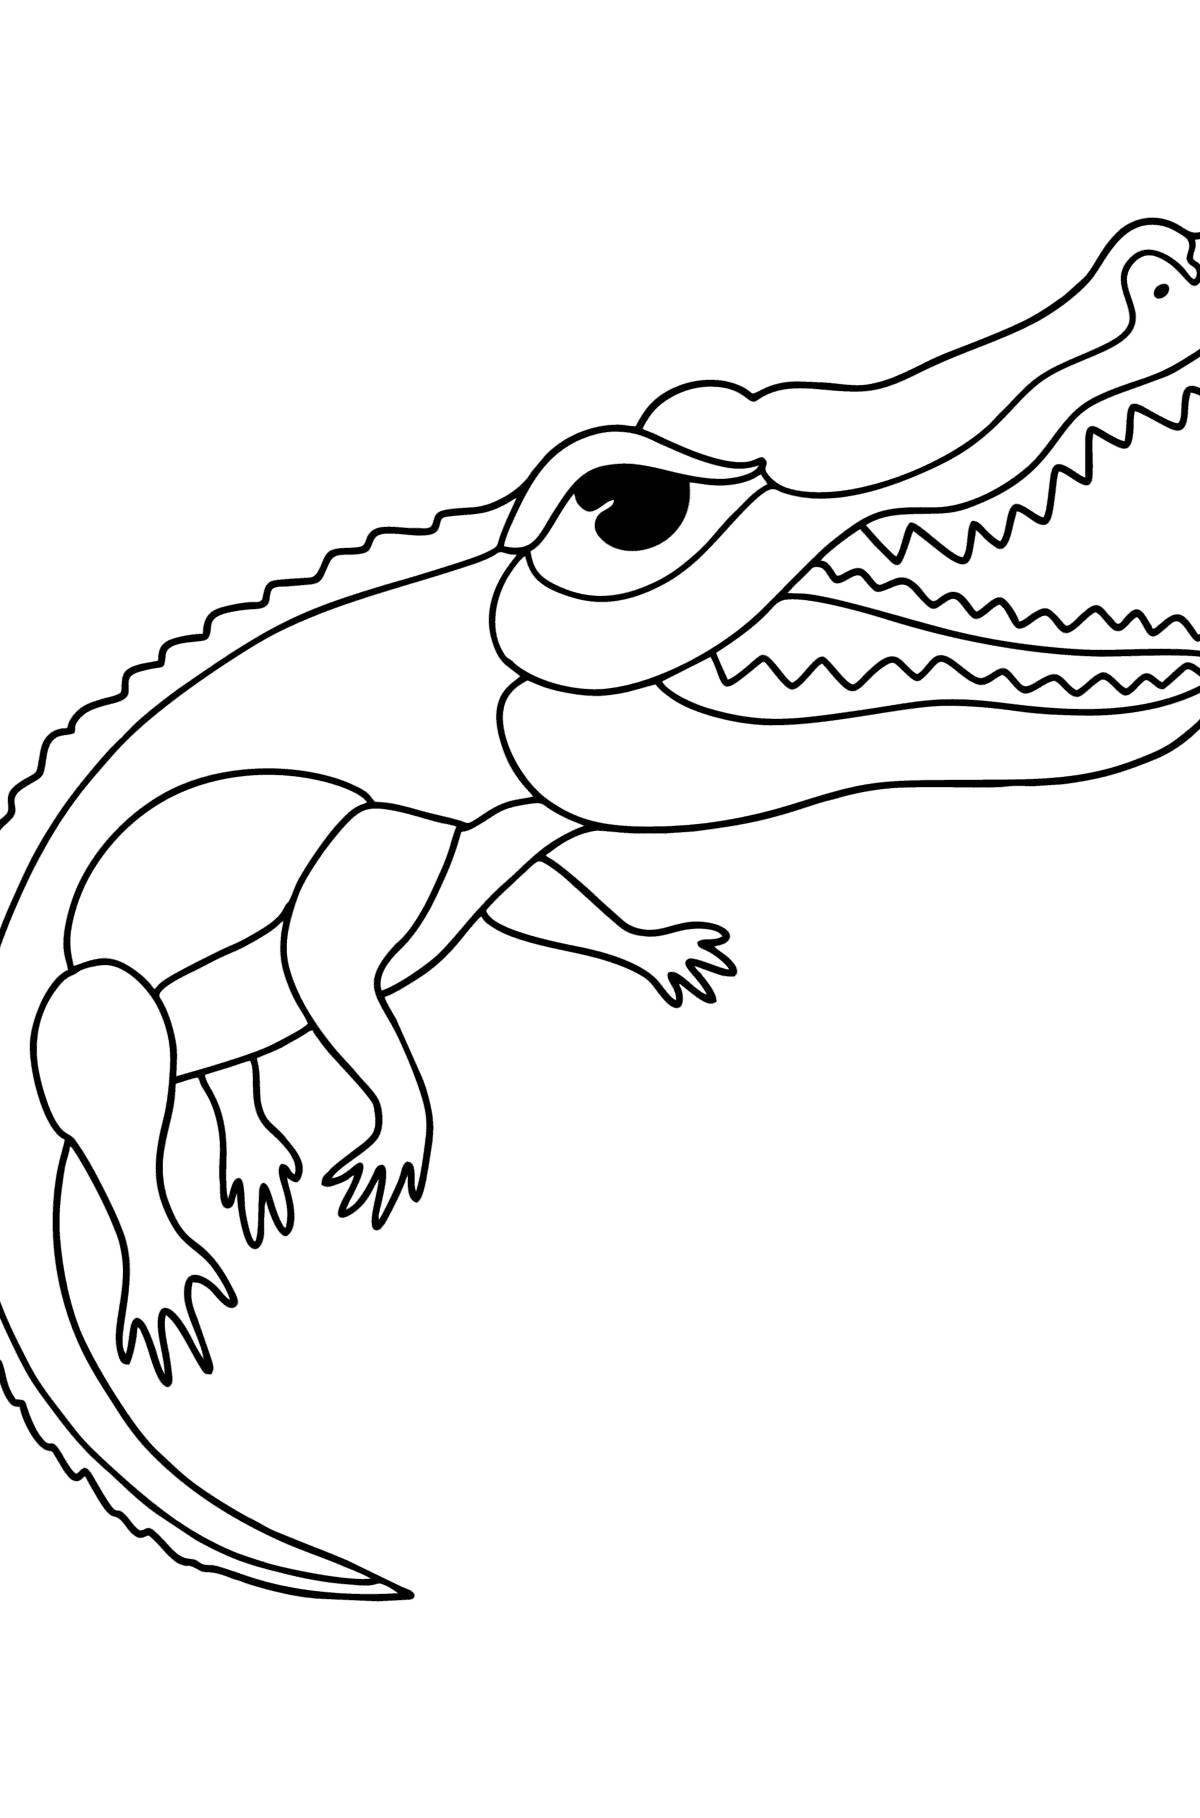 Веселая раскраска крокодил для детей 3-4 лет